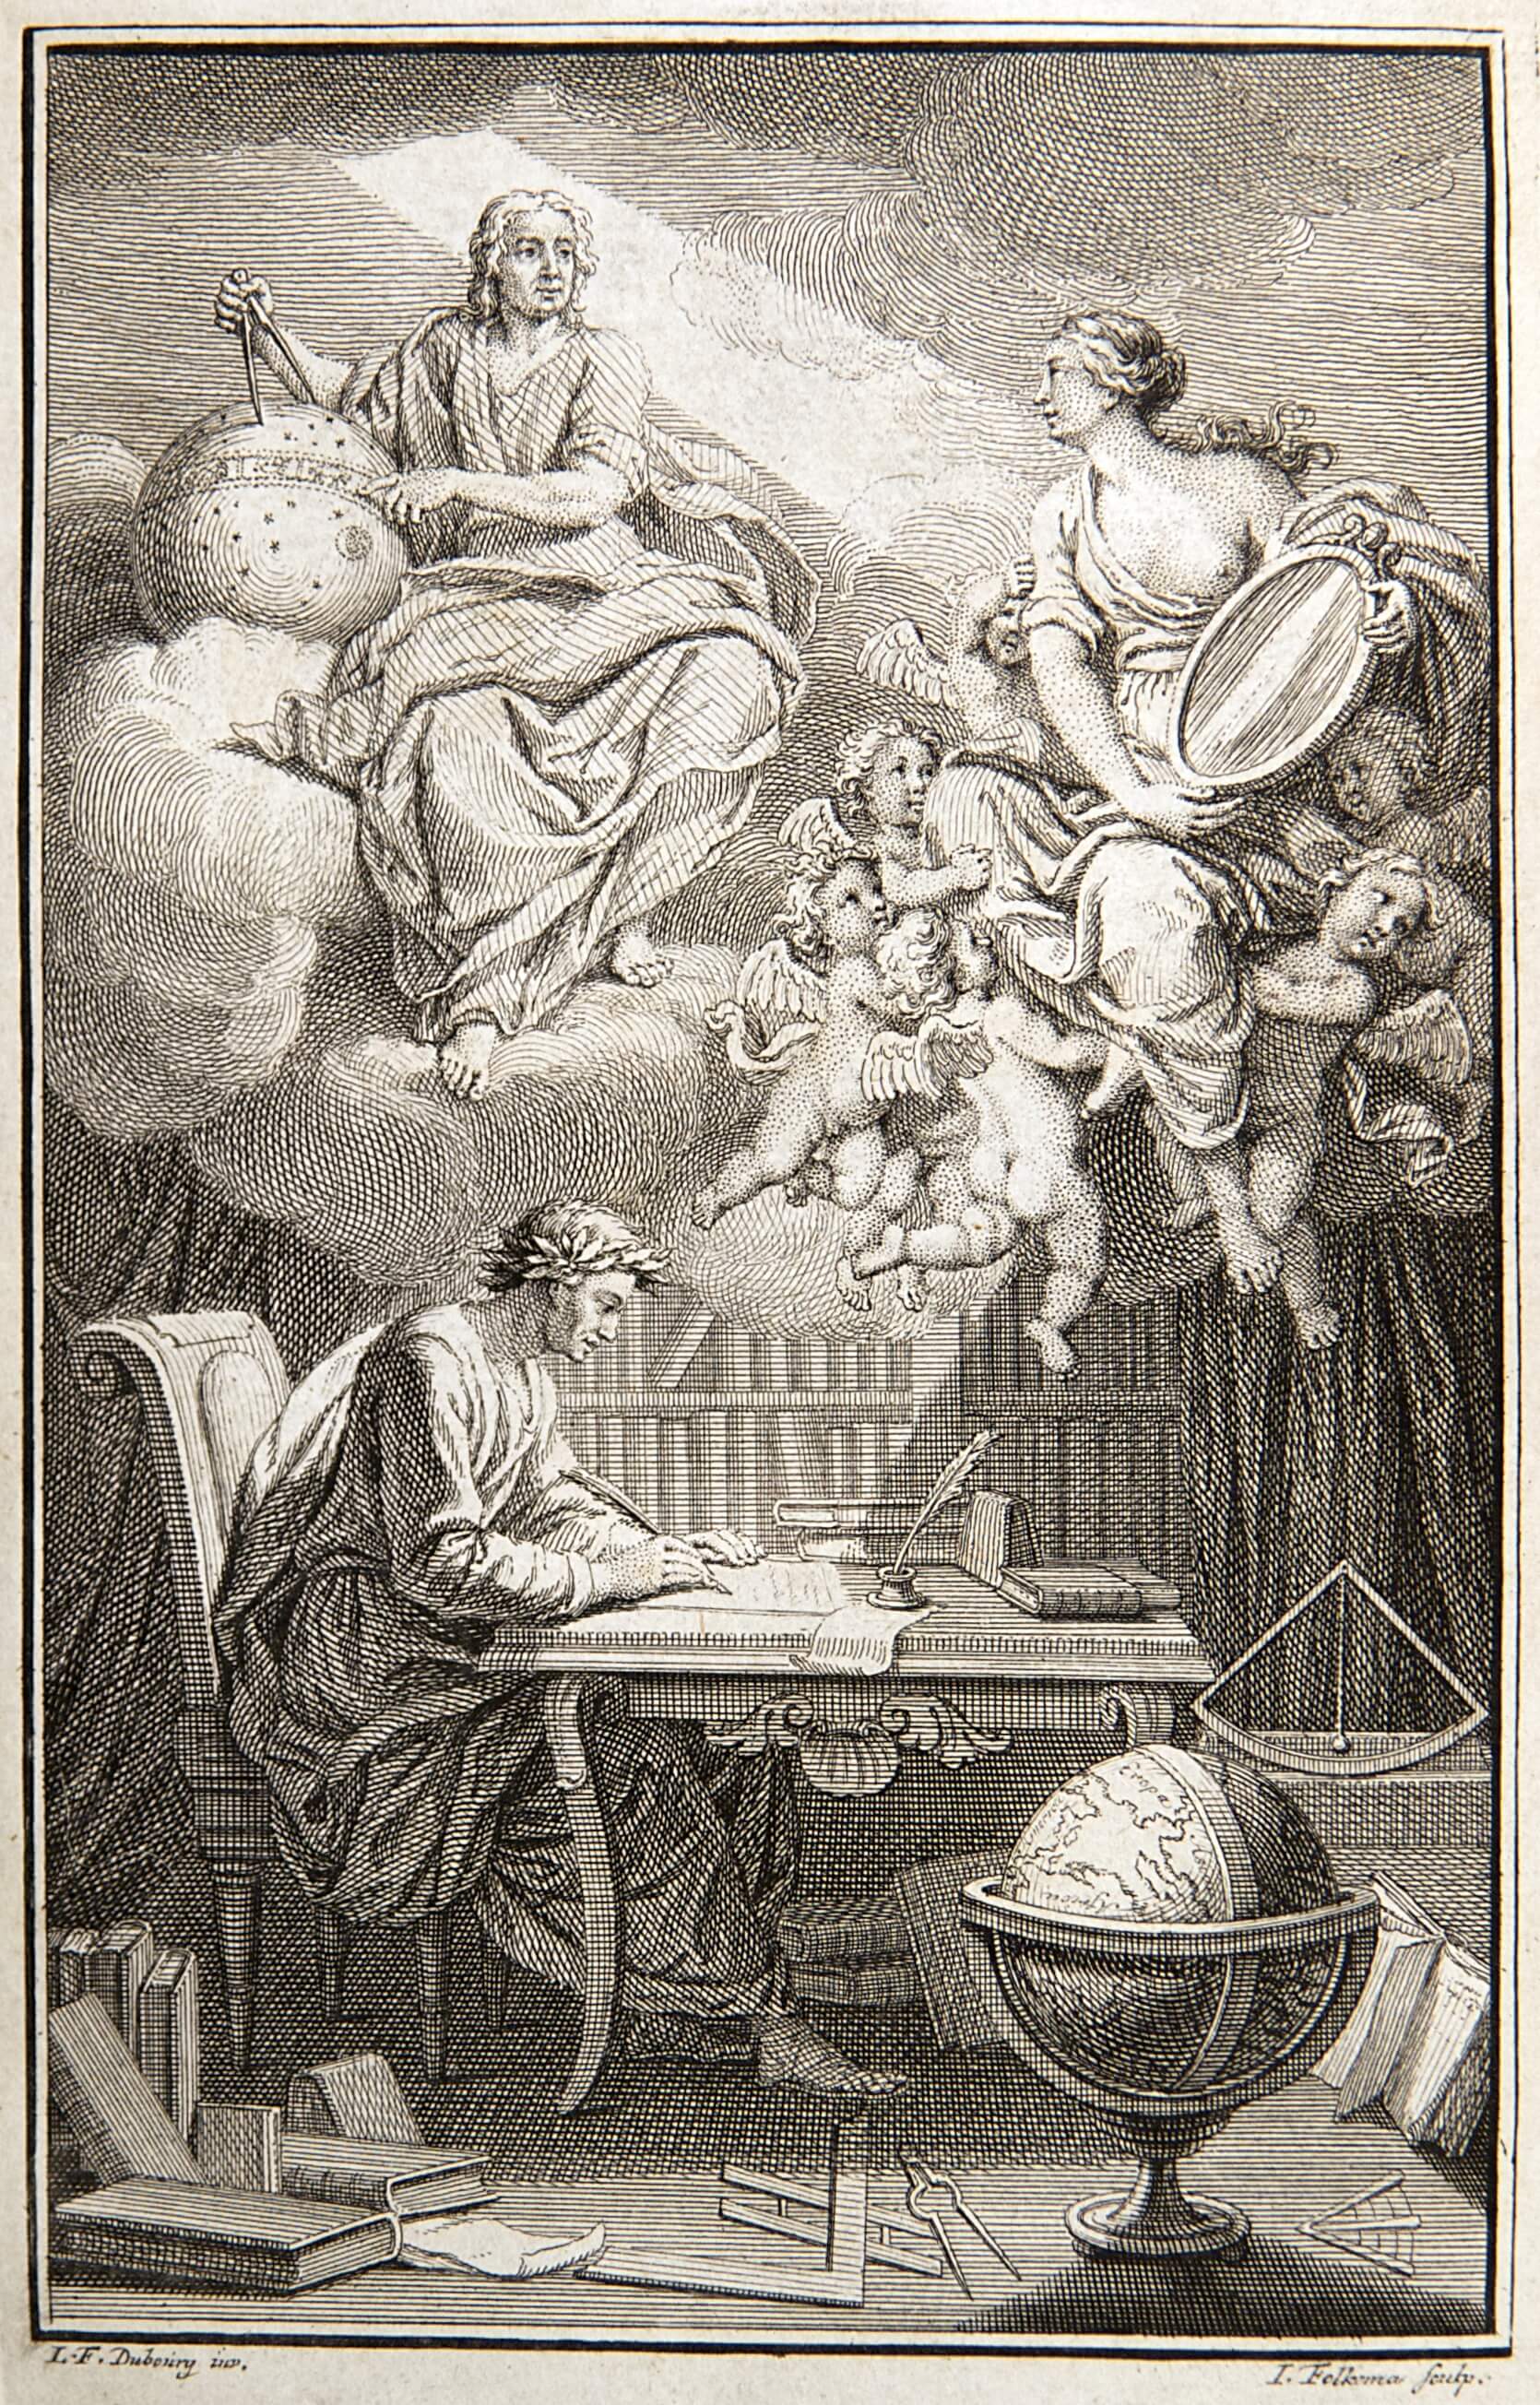 Portada de "Elementos de la filosofía" de Newton, año 1738.